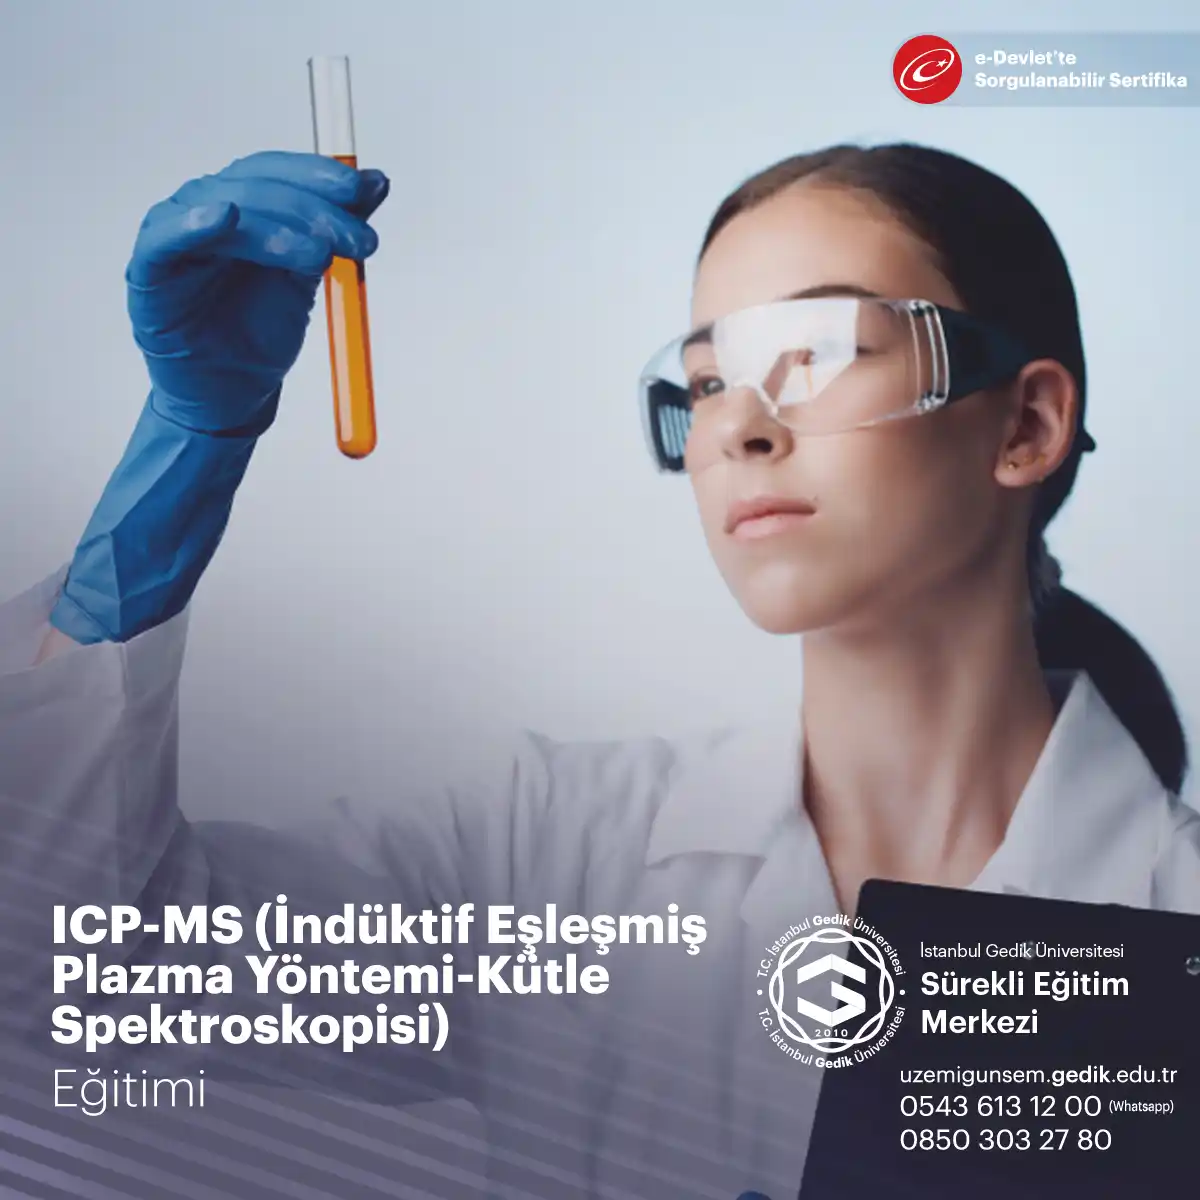 ICP-MS Eğitimi Sertifikası, katı ve sıvı madde örneklerinin; nitel ve nicel olarak tayin edilmesi amacıyla tercih edilen oldukça değerli bir eğitimdir.